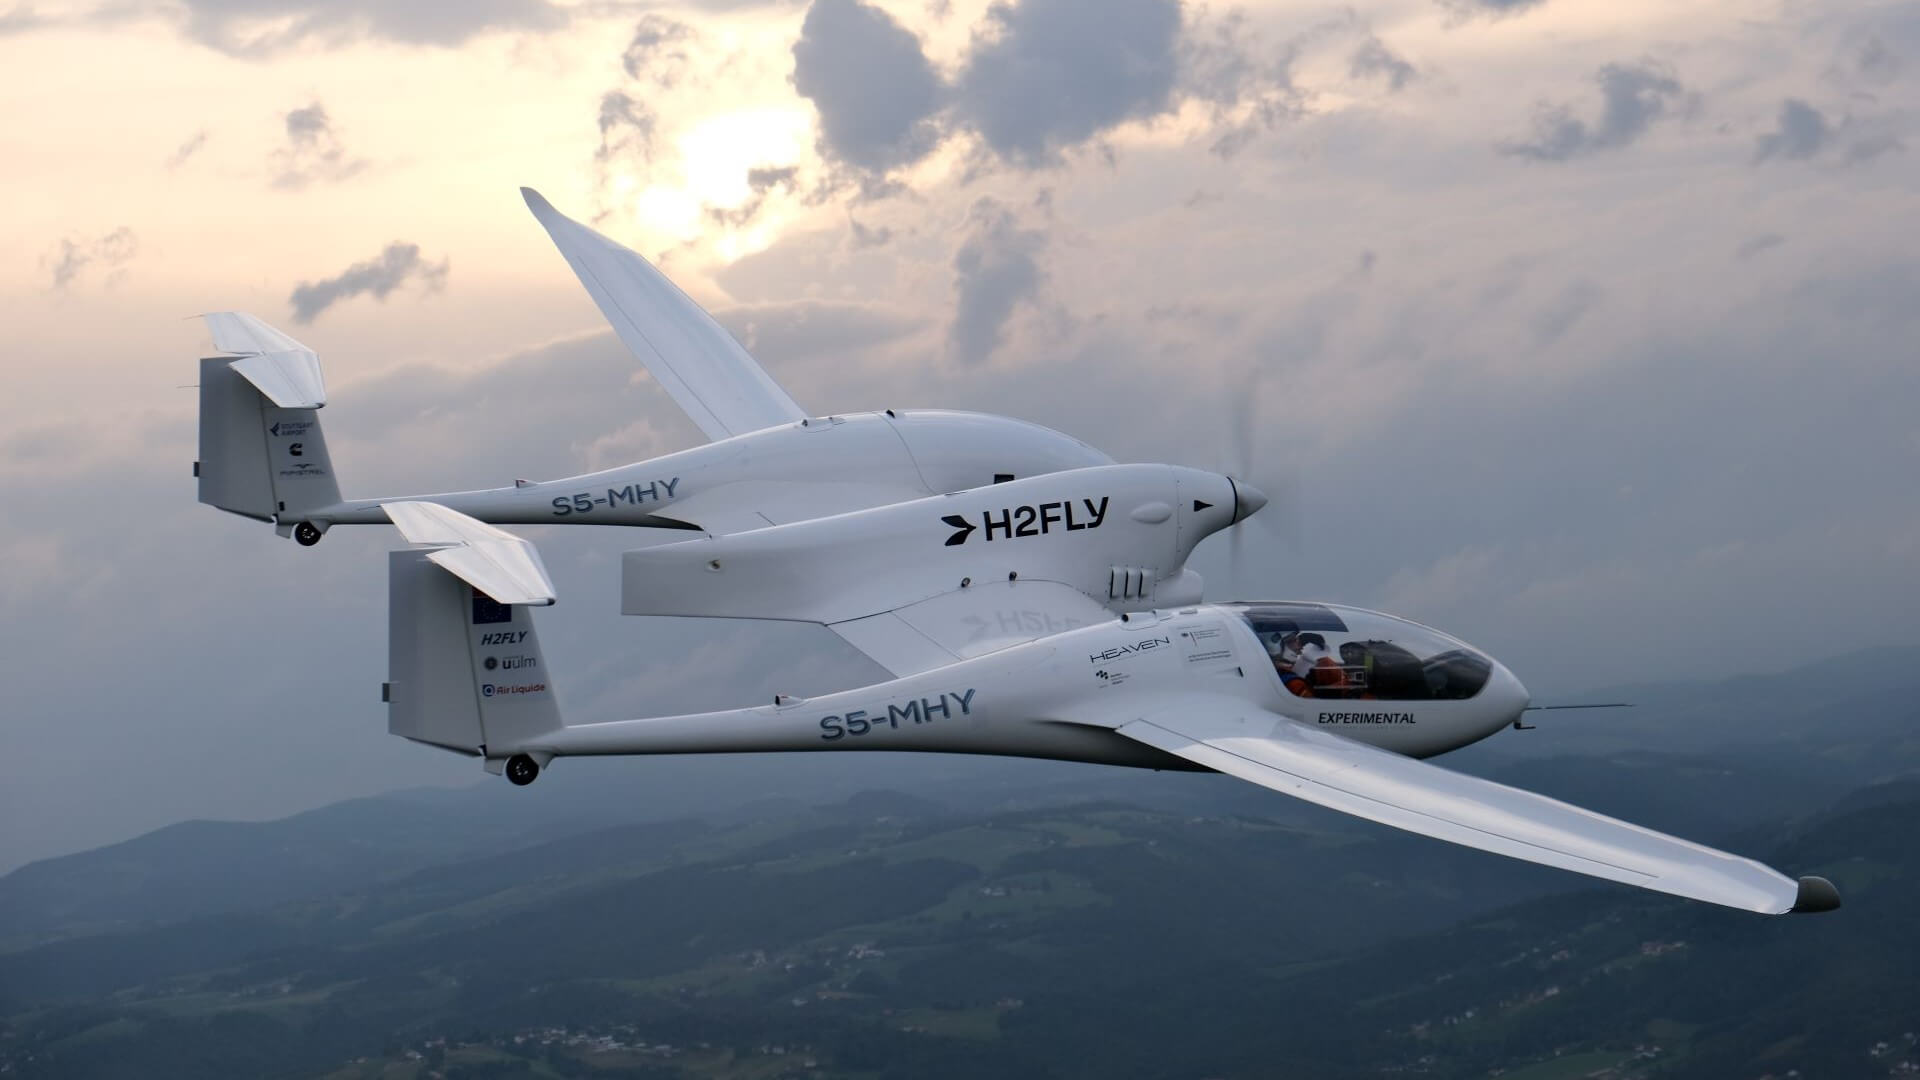 L'avion de démonstration HY4 à hydrogène-électrique a décollé de Maribor, en Slovénie, pour plusieurs essais en vol Photo de : H2FLY